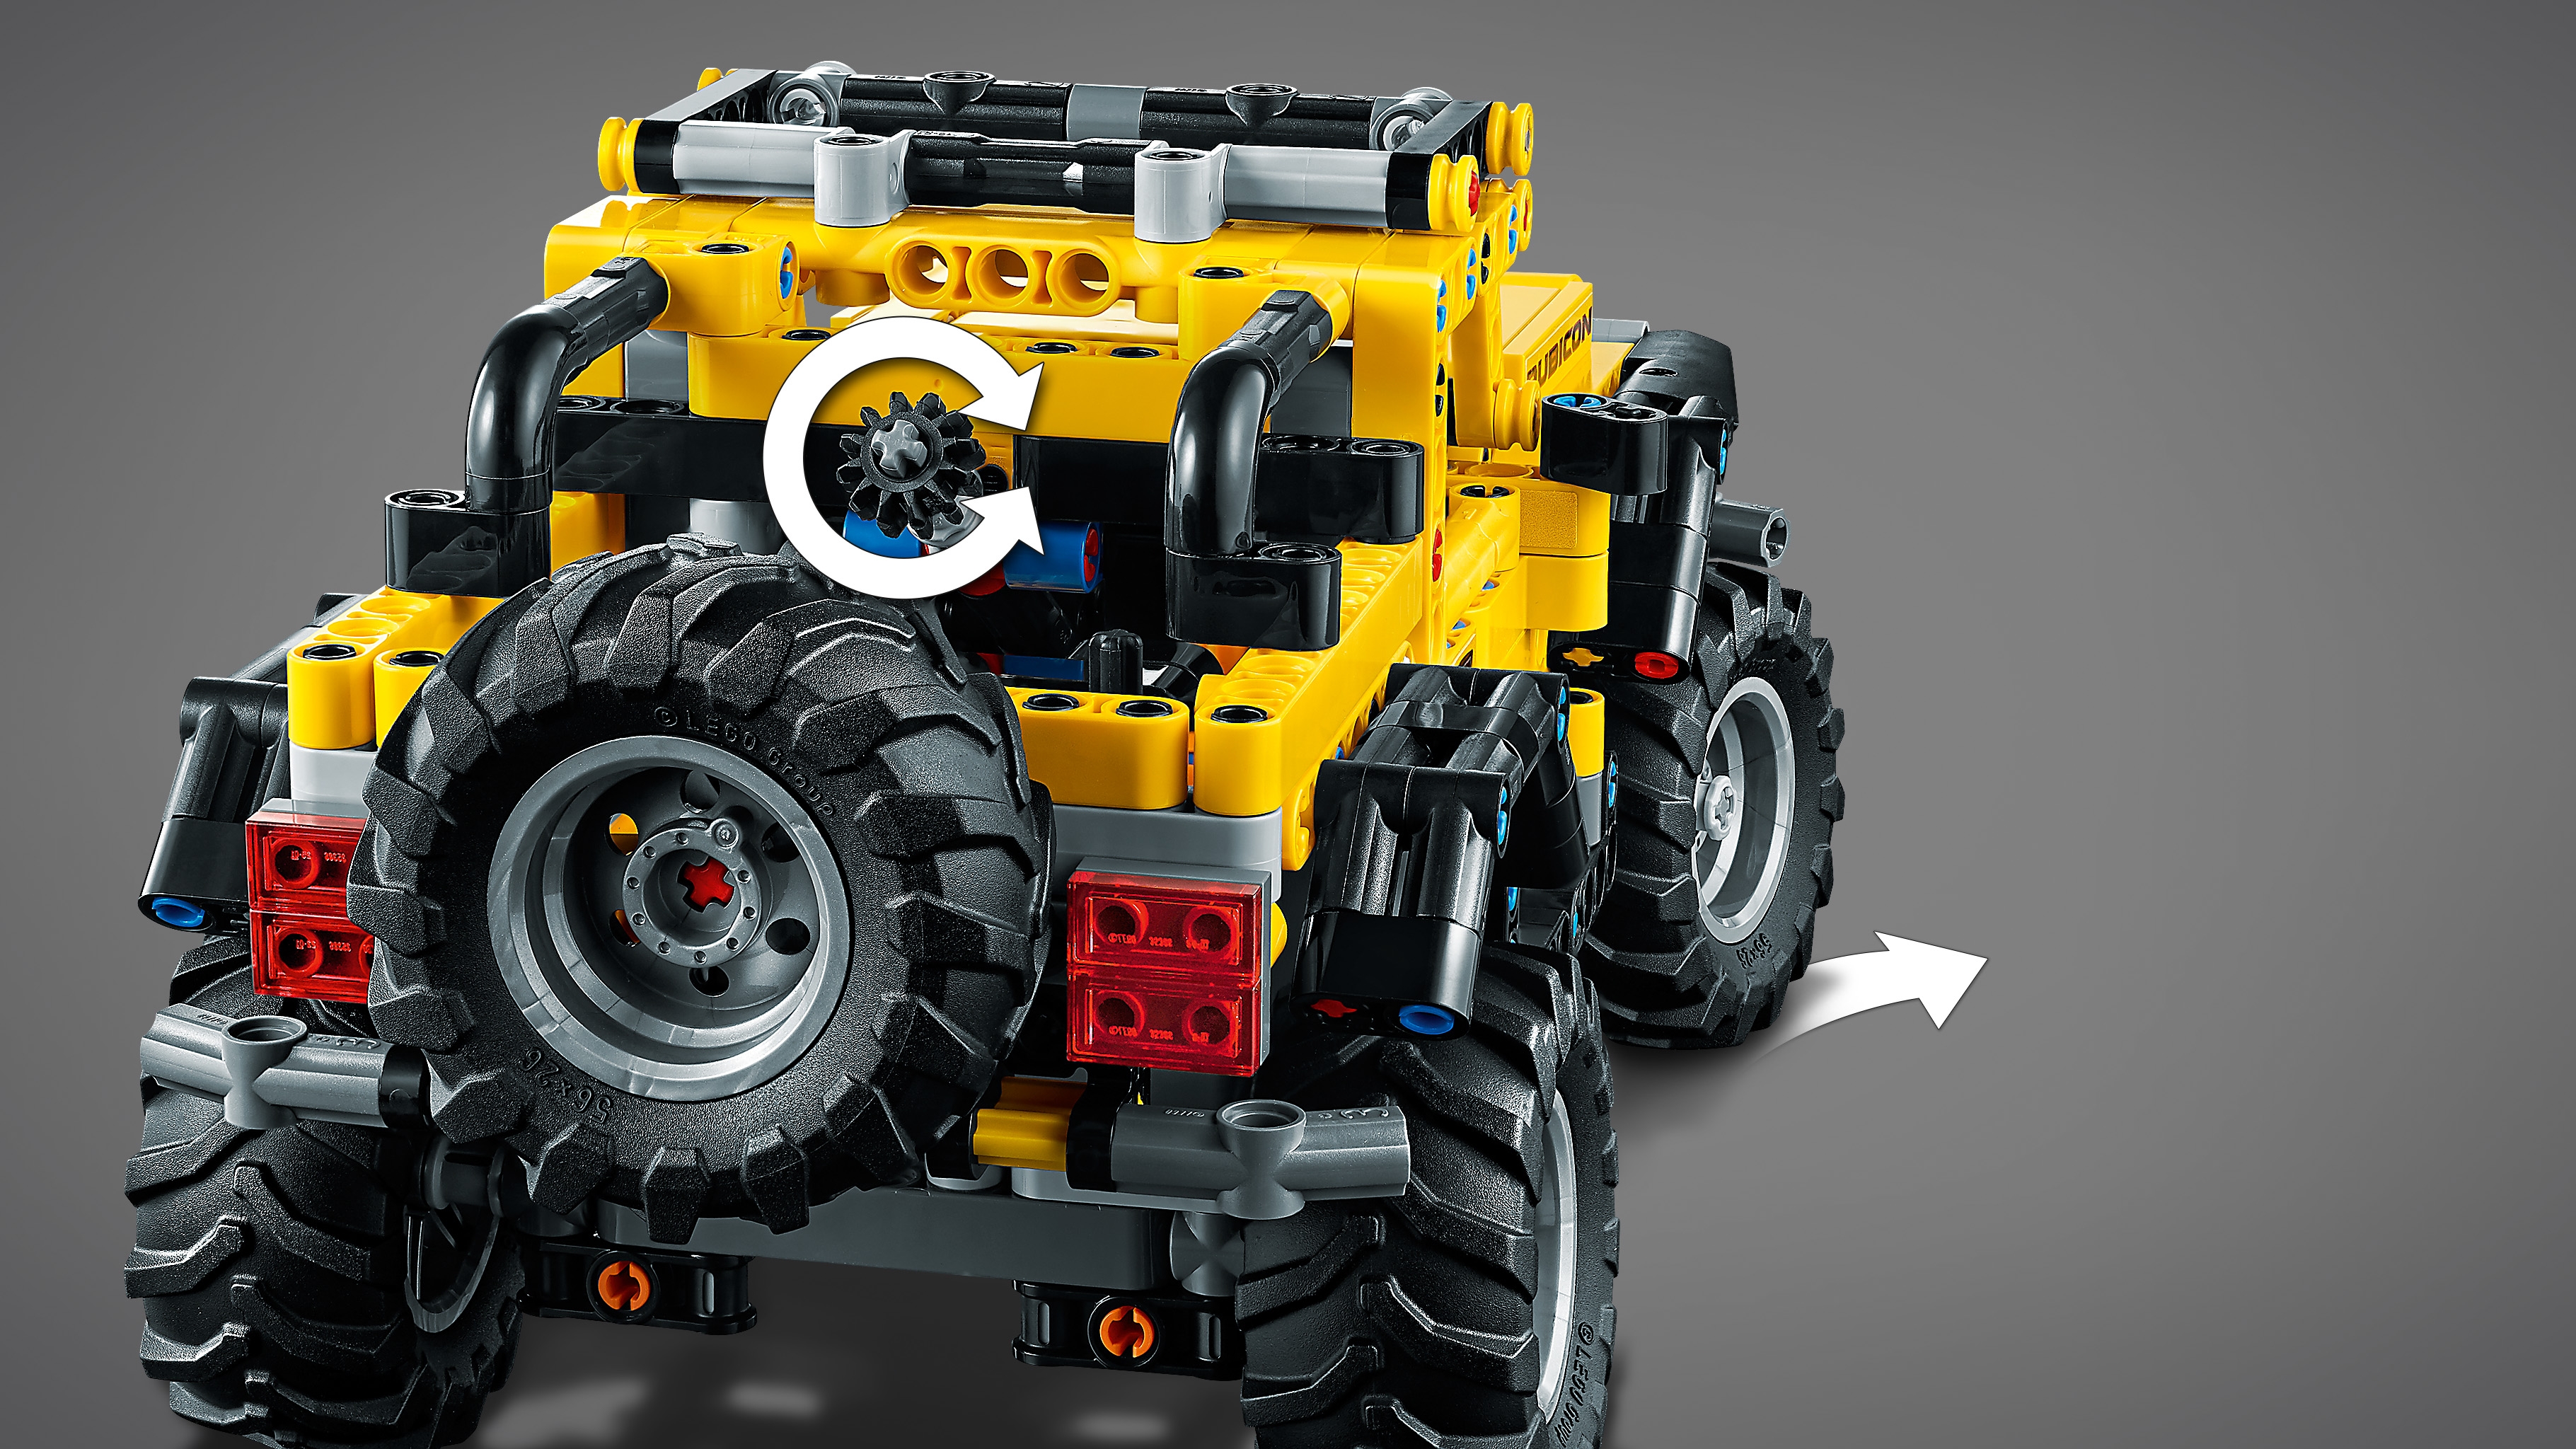 Ein lego-jeep mit farbenfrohem design auf der vorderseite